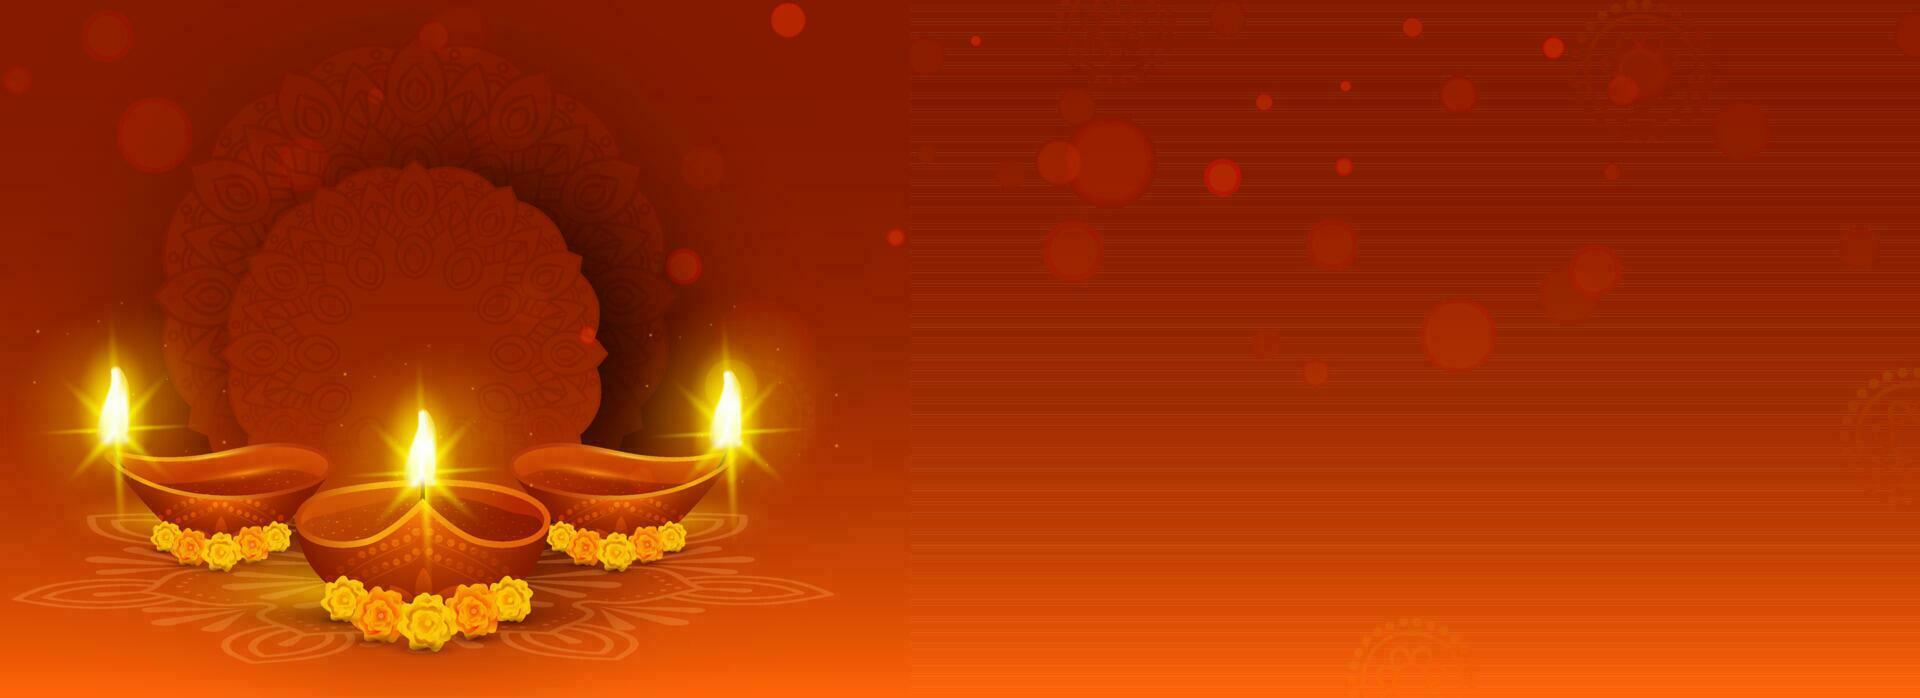 realistico ardente olio lampade con calendula fiori, vuoto telaio su bruciato rosso e arancia bokeh sfocatura sfondo. contento Diwali intestazione o bandiera concetto. vettore